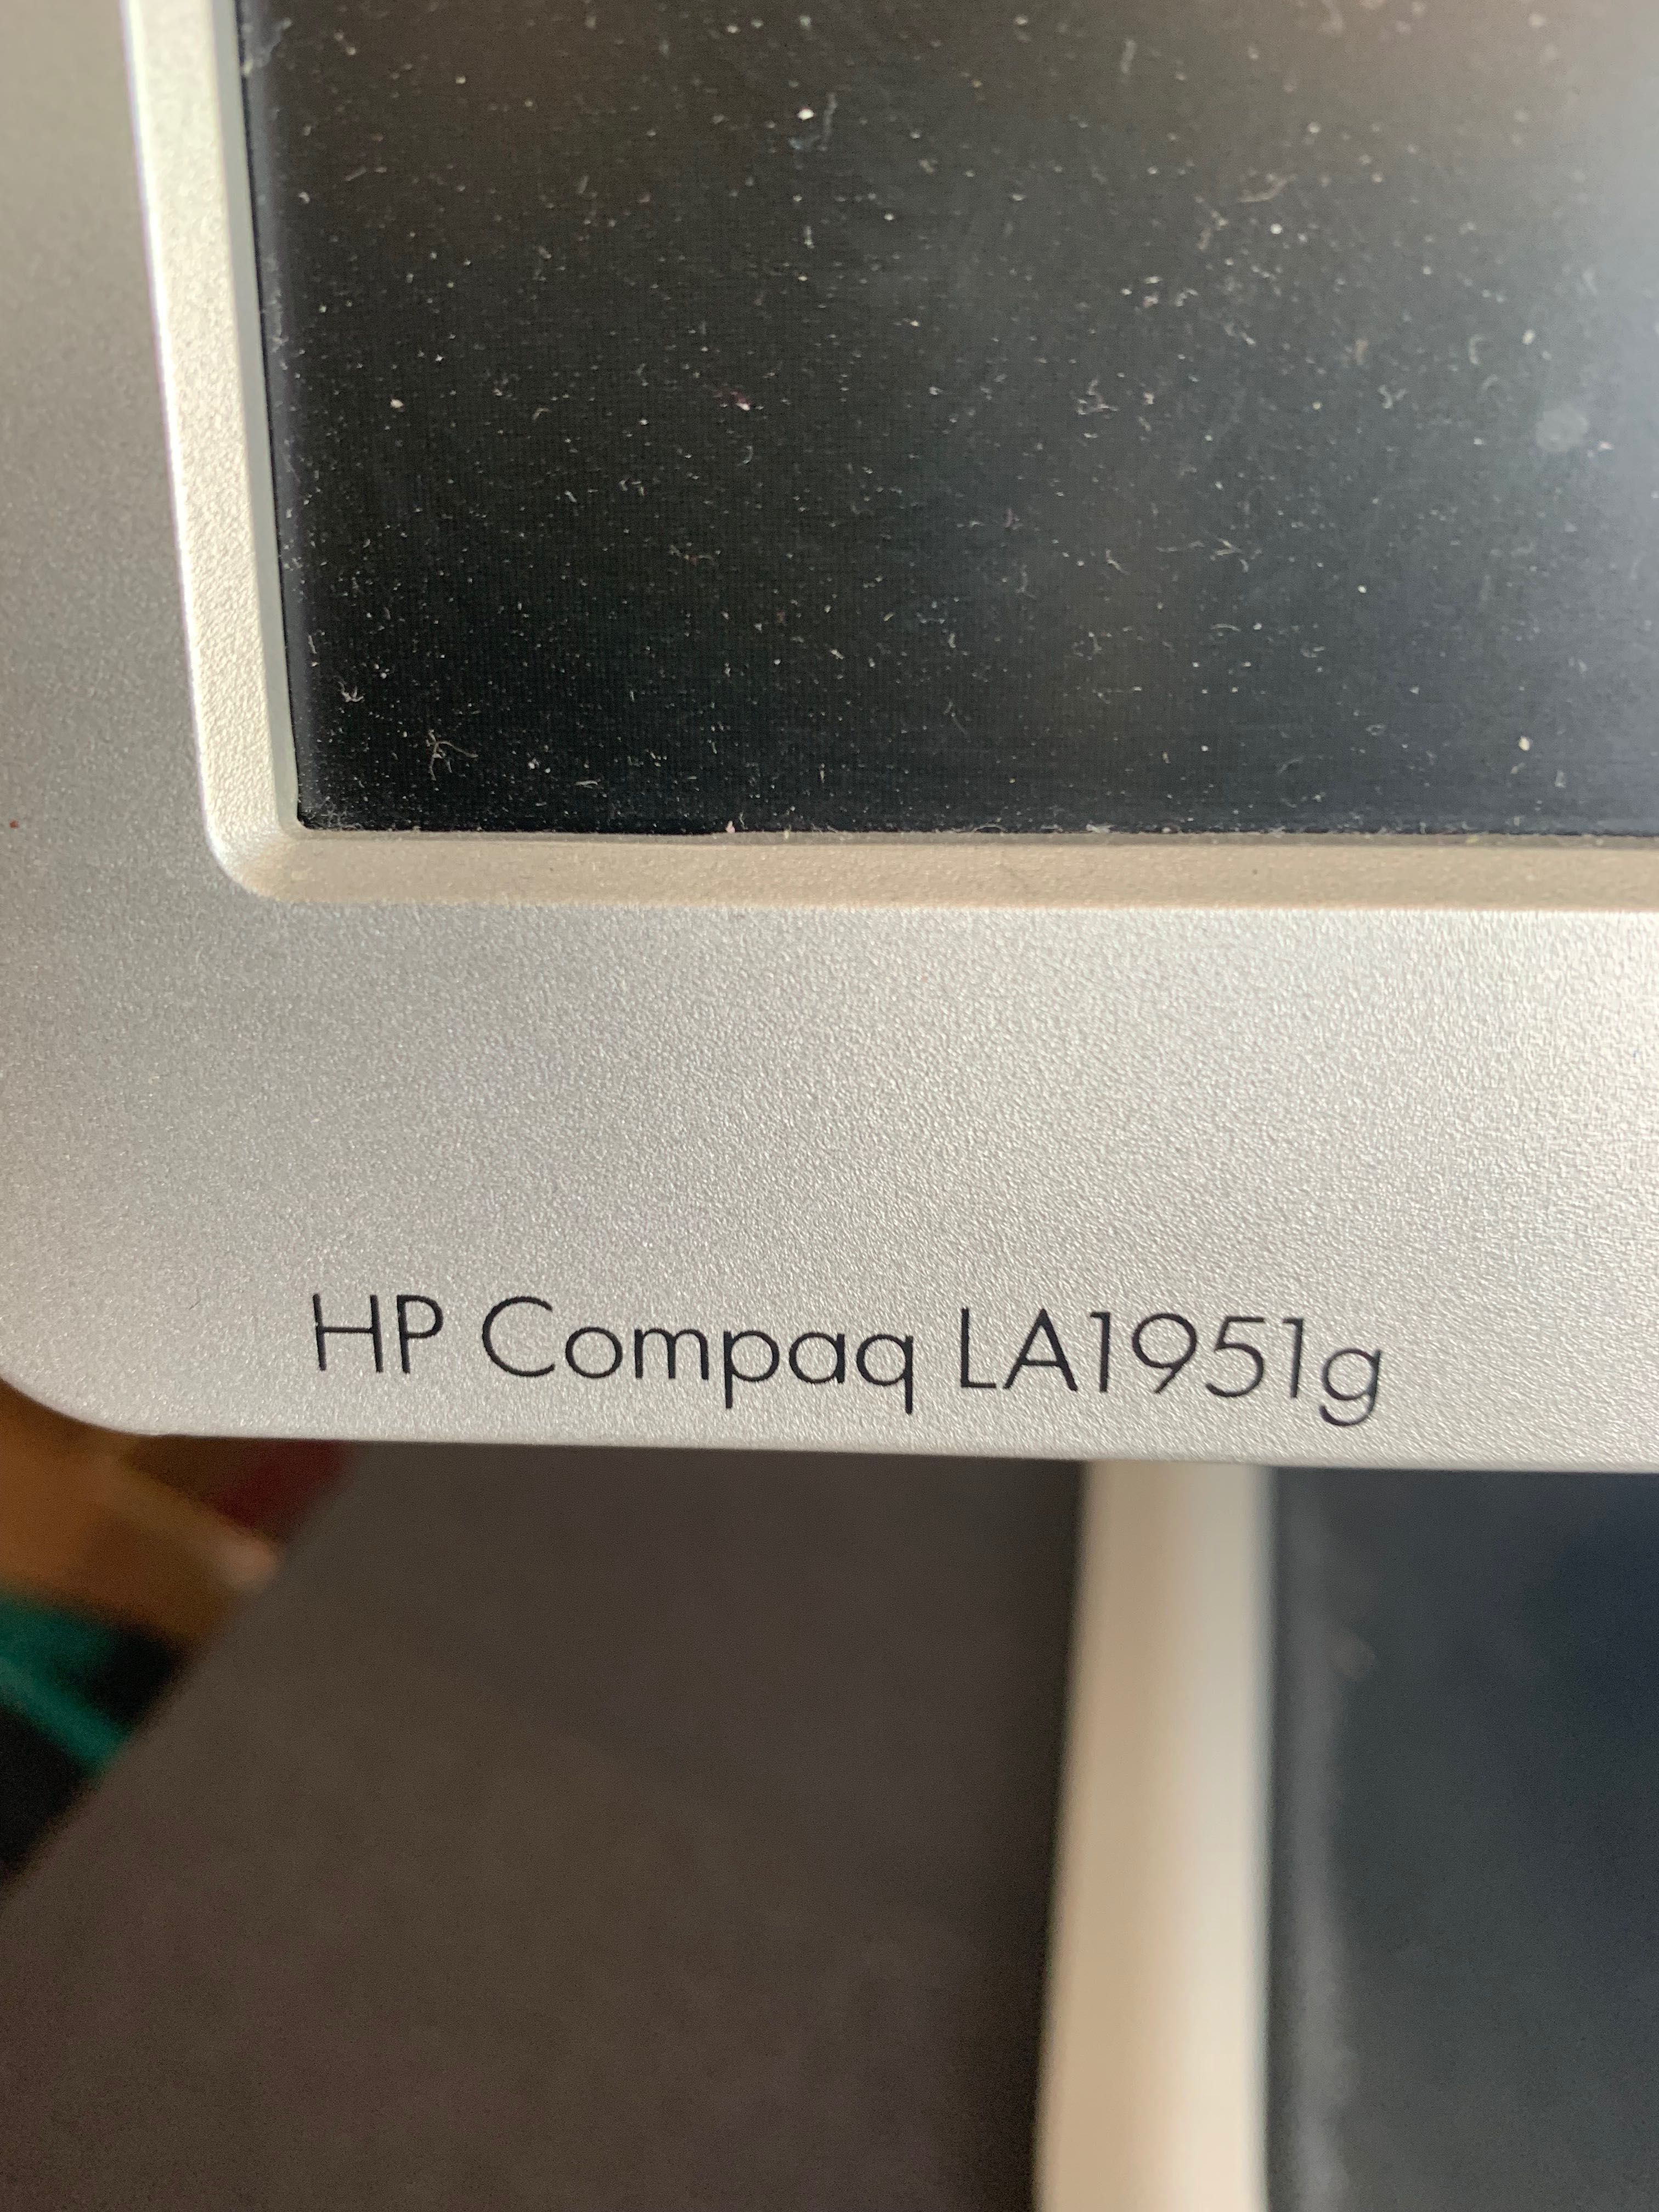 HP Compaq LA1951g монитор